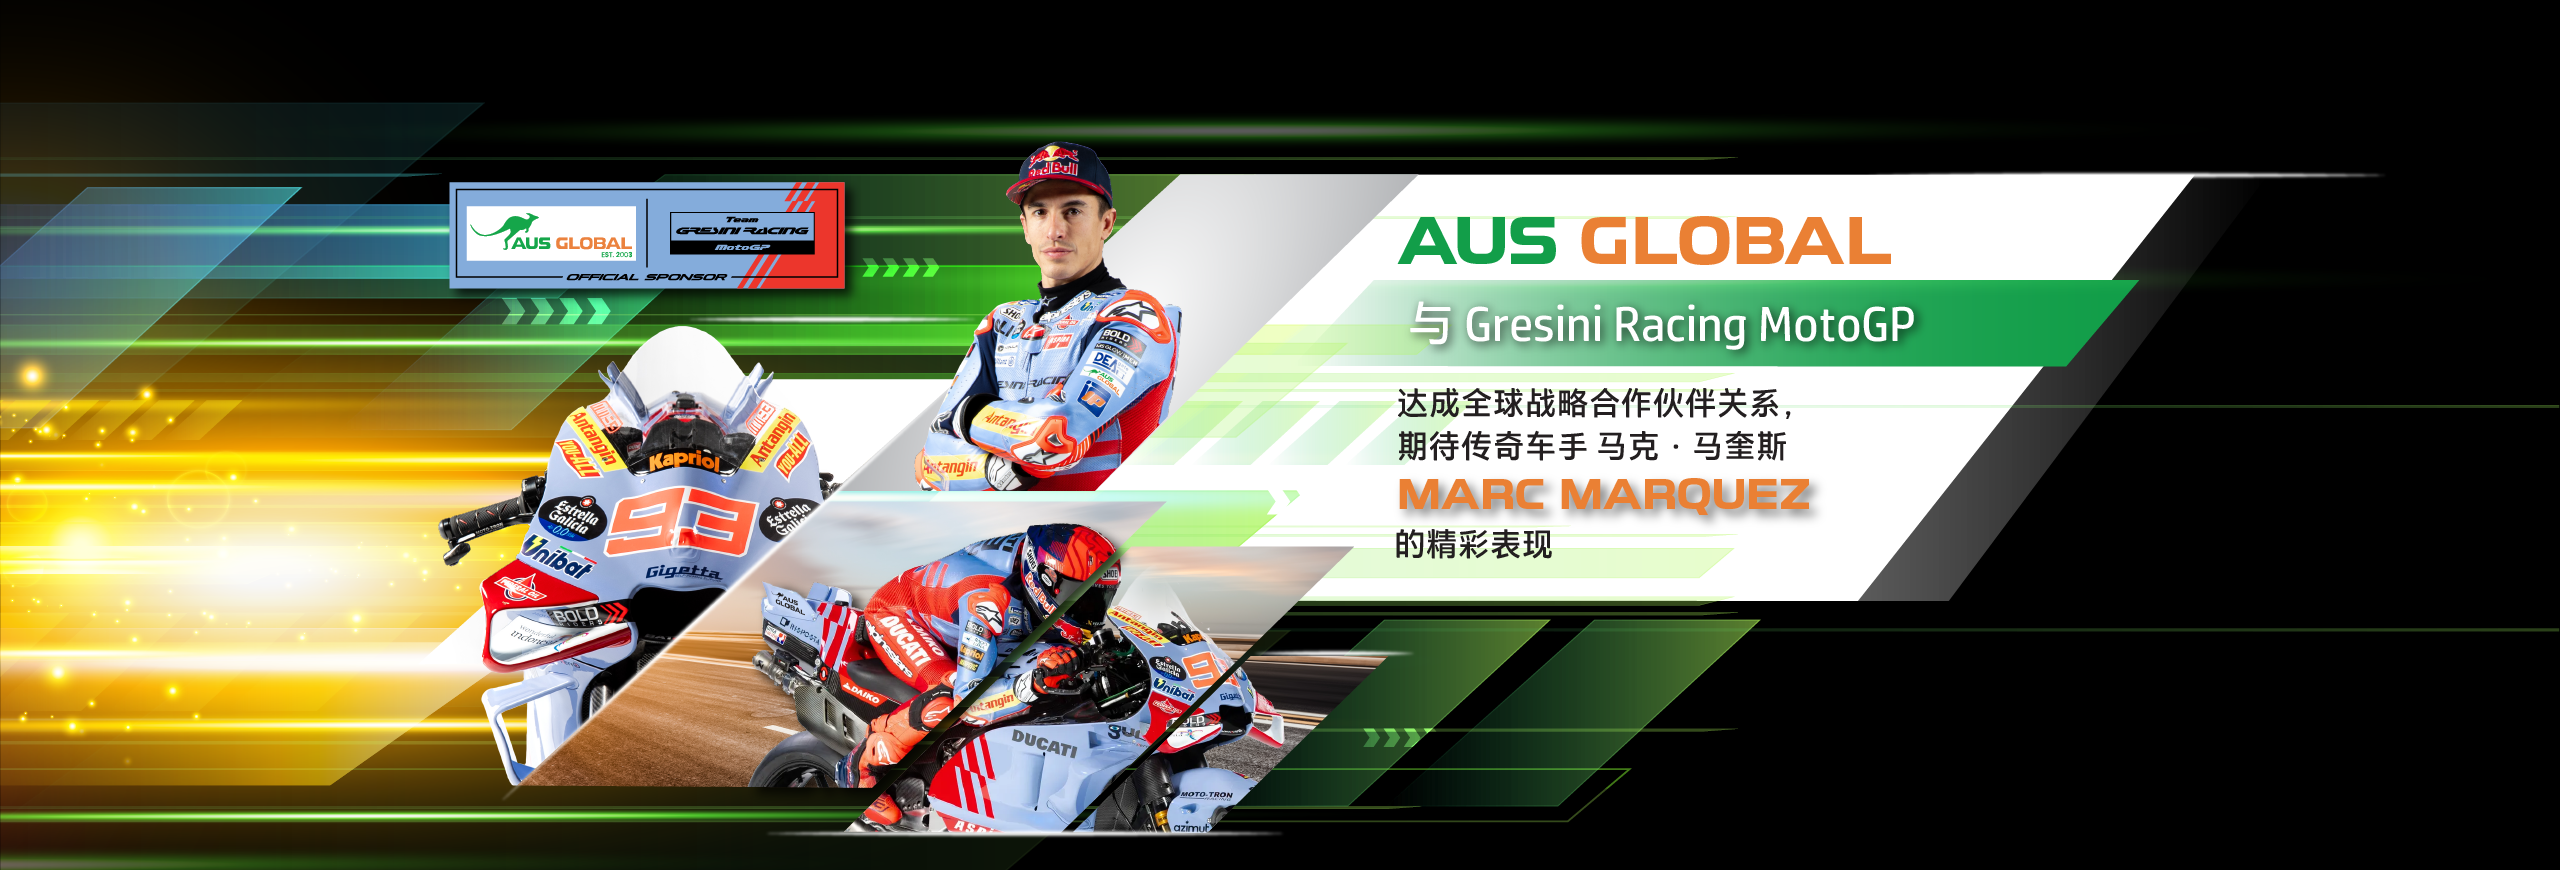 【赛车体育】AUS GLOBAL 与 Gresini Racing MotoGP 达成全球战略合作